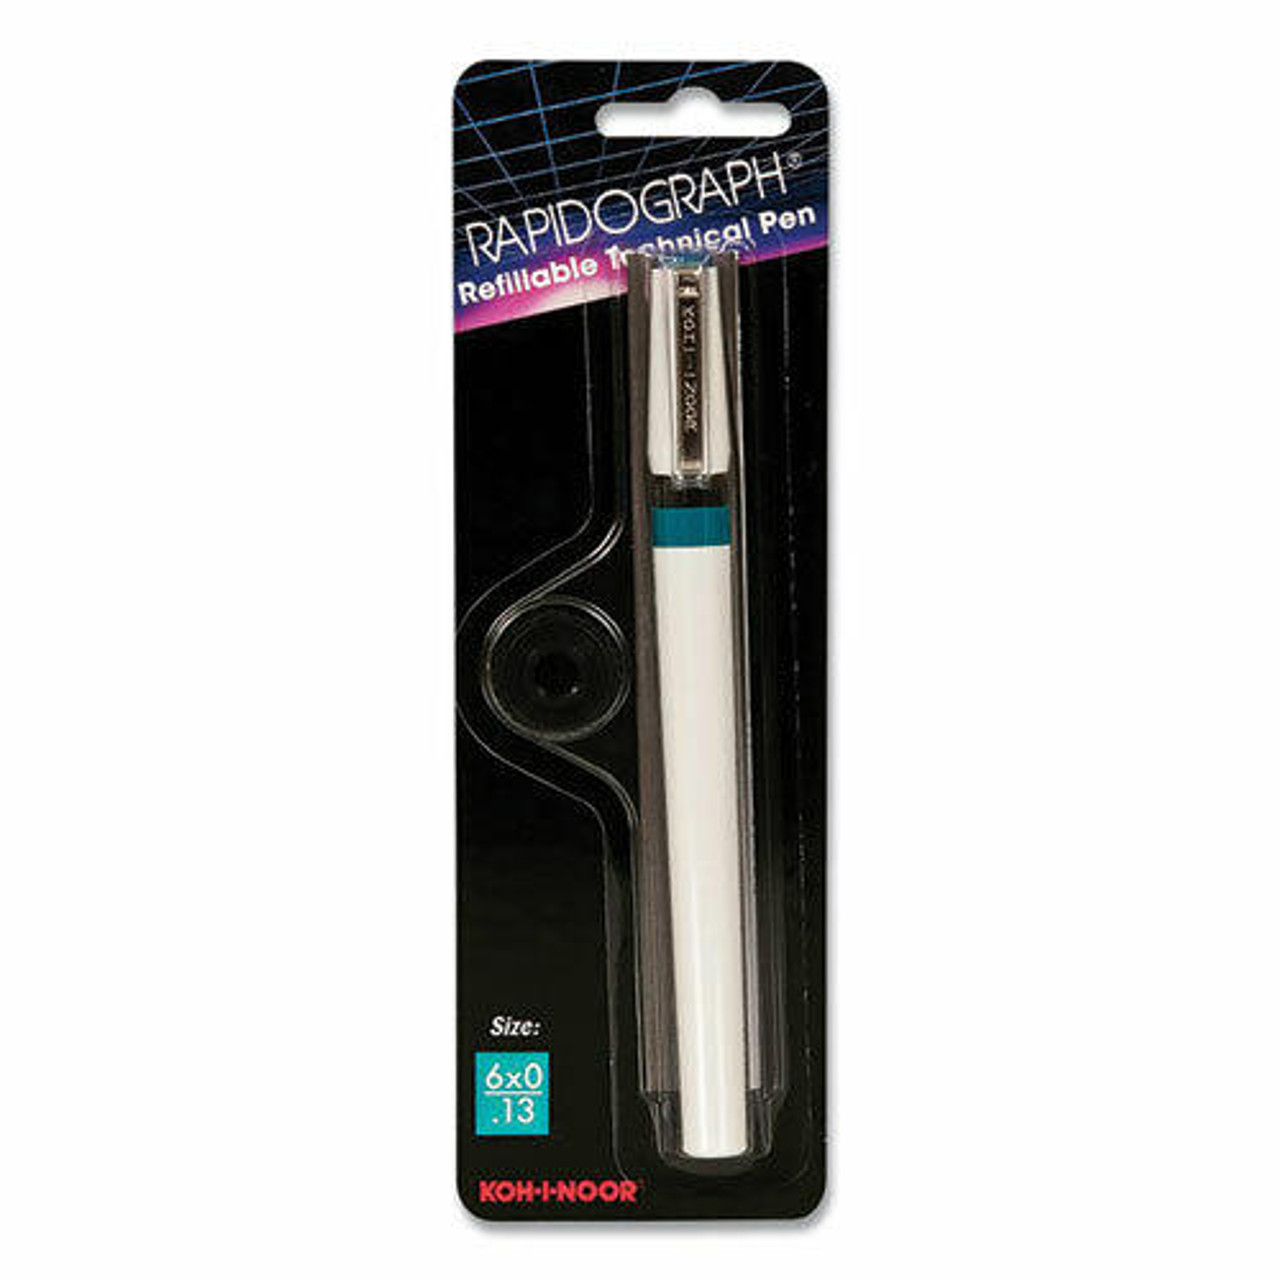 Koh-I-Noor - Rapidograph 3165 Technical Pen - #4x0 (.18 mm.) - Sam Flax  Atlanta